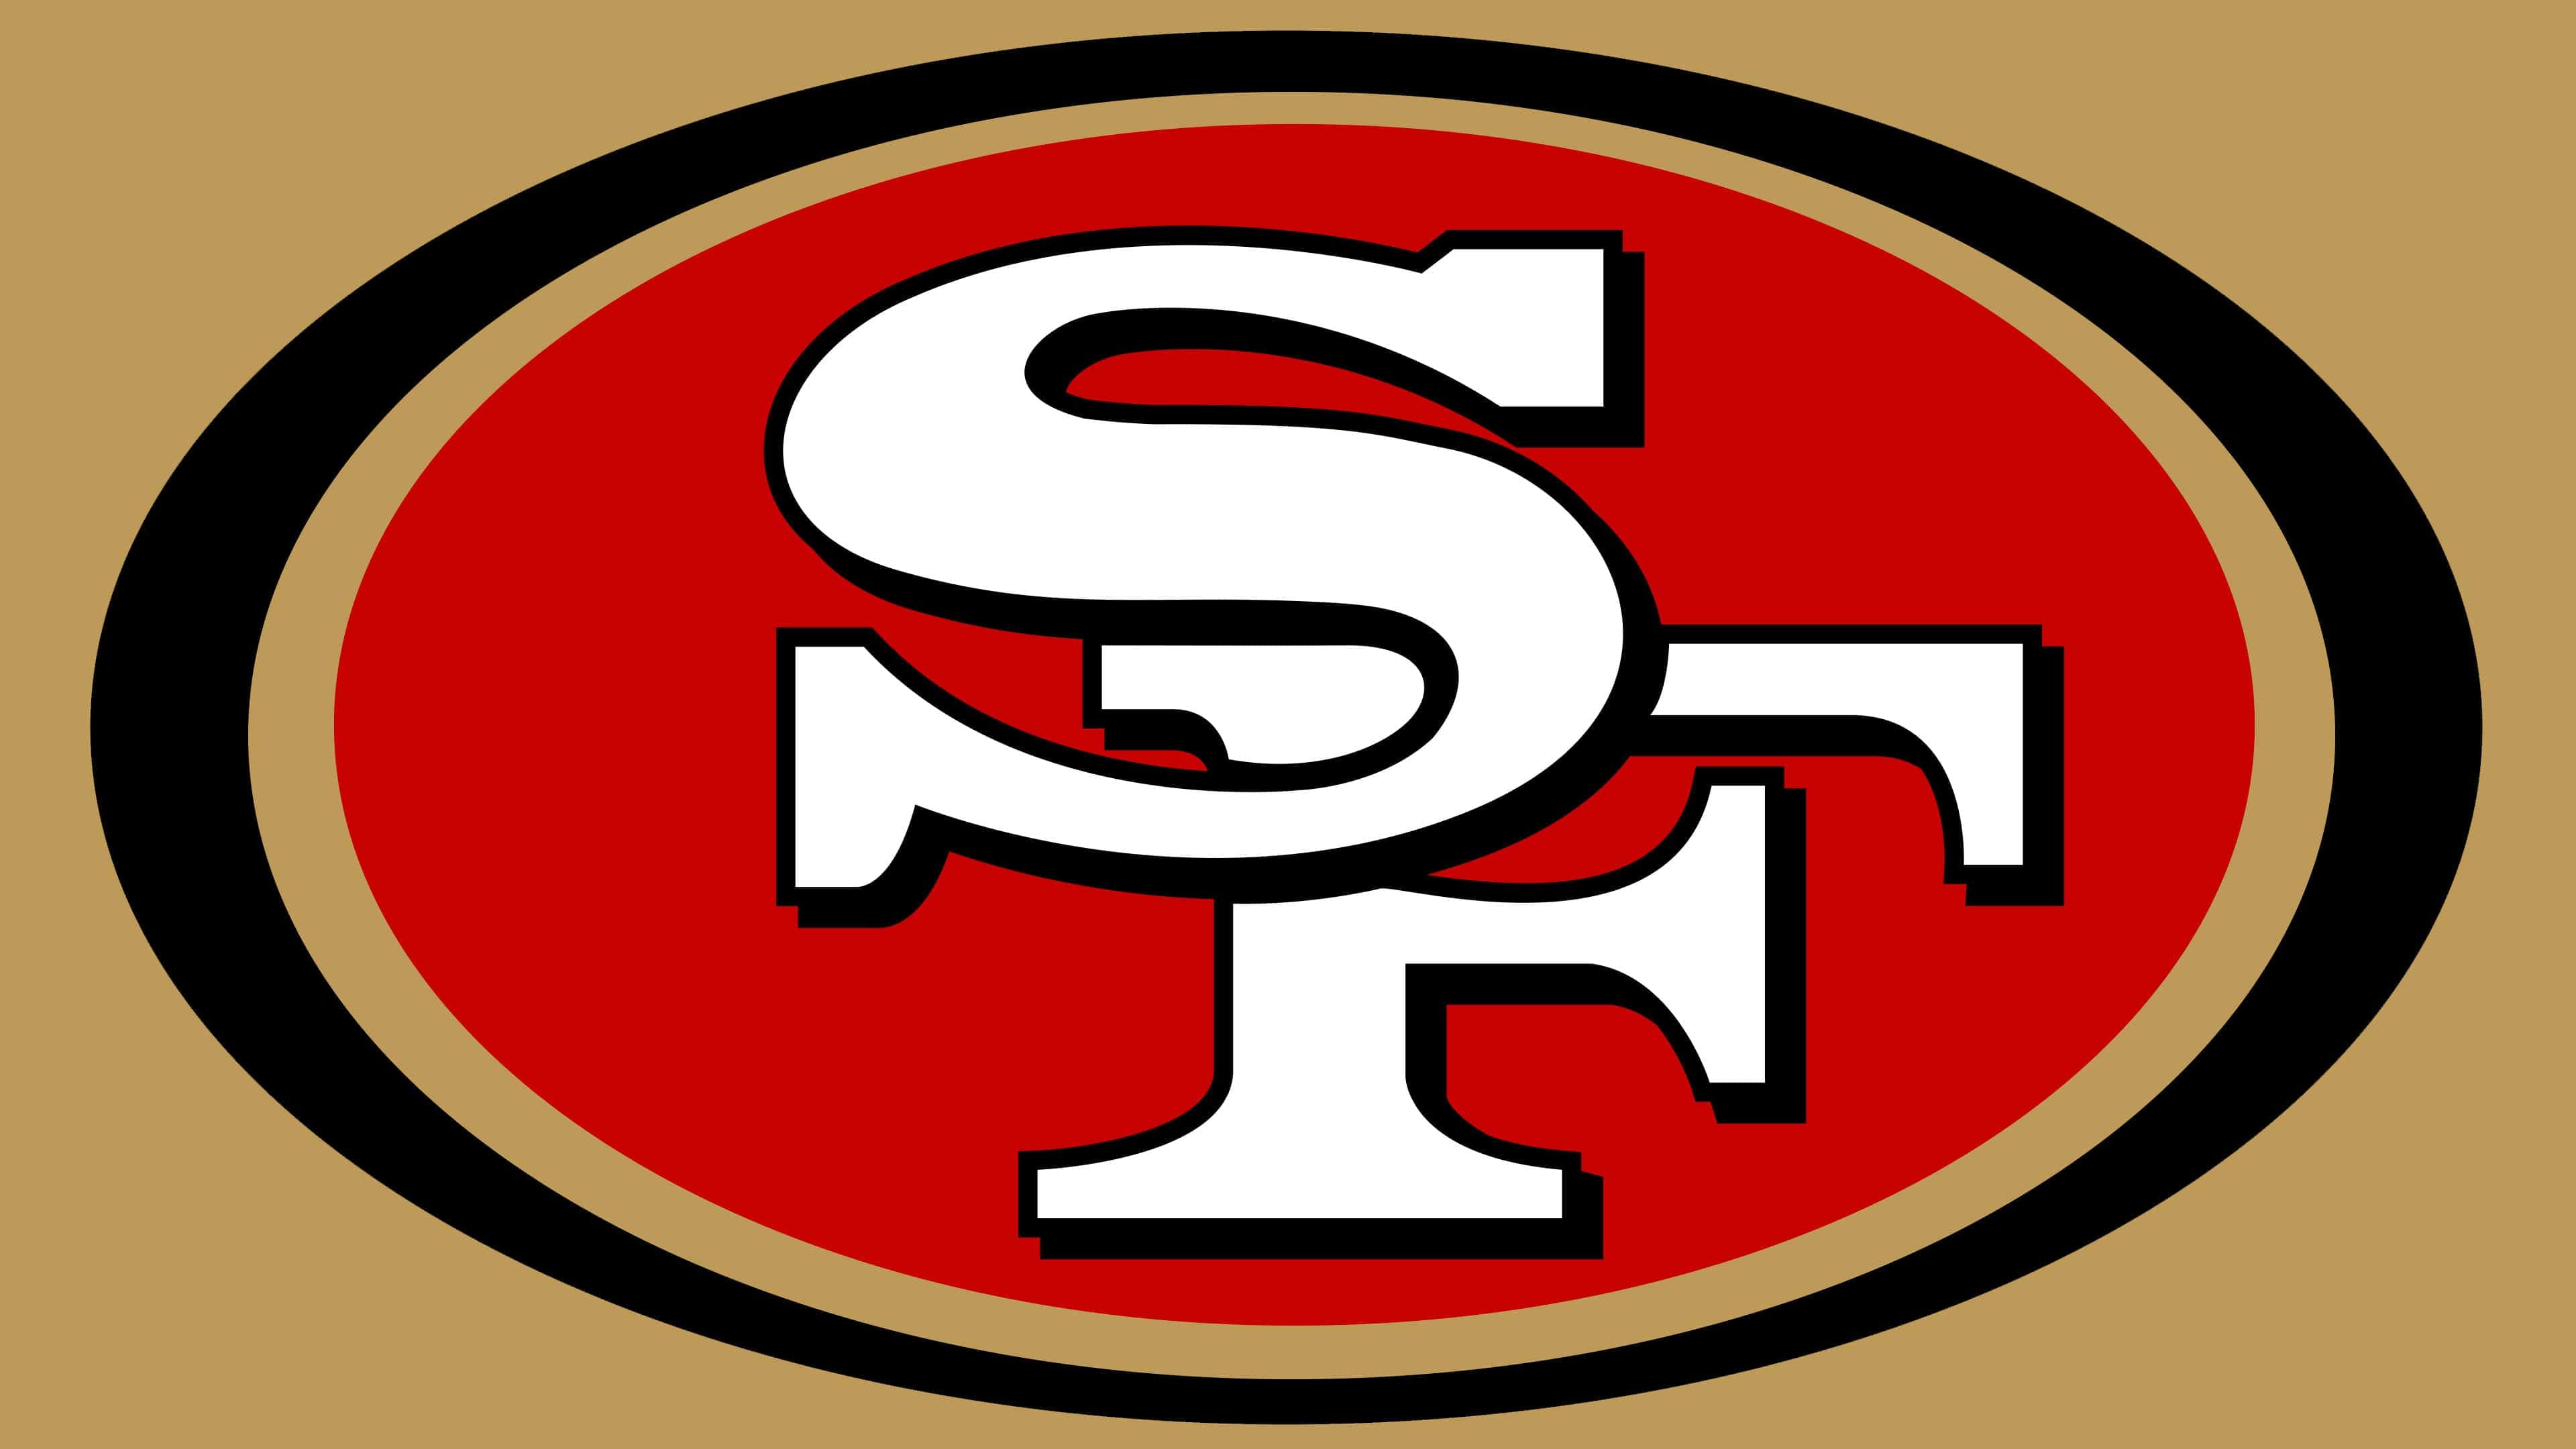 Hãy xem bức ảnh về logo của đội bóng quyền anh San Francisco 49ers để cảm nhận sự uyển chuyển và đẳng cấp của chúng. Logo 49ers chắc chắn sẽ khiến bạn ấn tượng ngay từ cái nhìn đầu tiên.